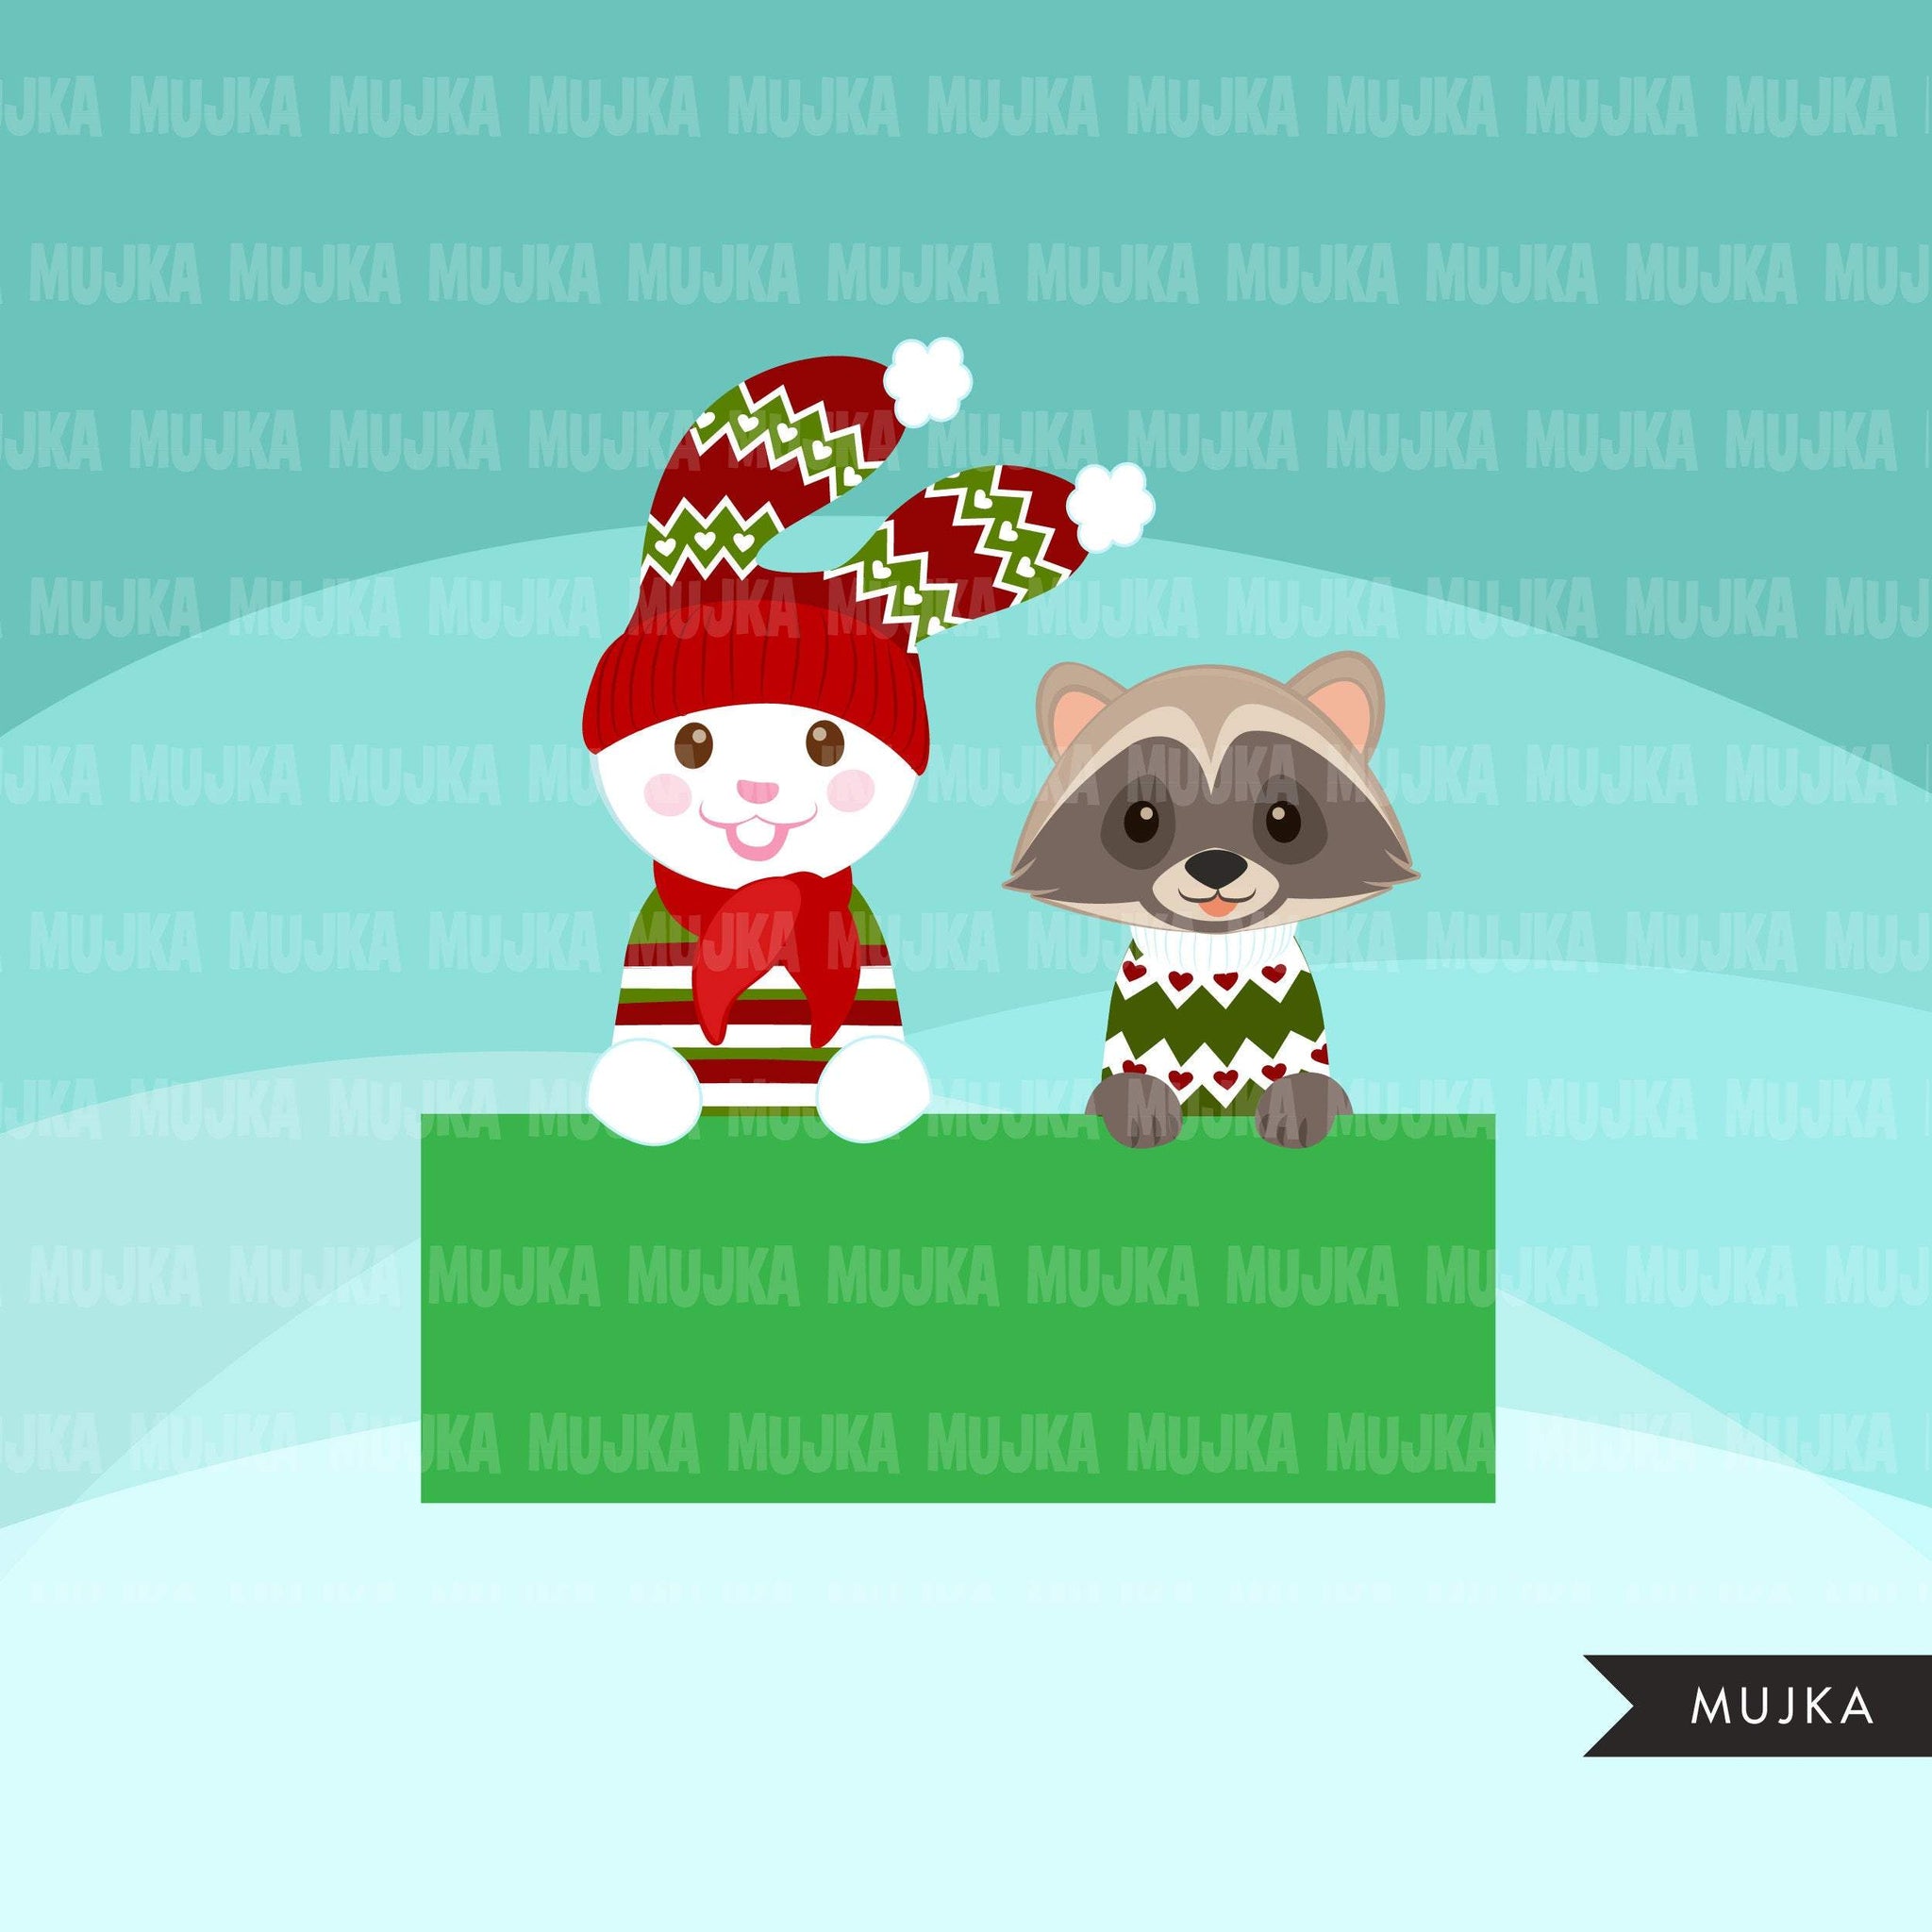 Christmas animals clipart, cute noel graphics, bunny, racoon, fox, bear, reindeer, hippo clip art